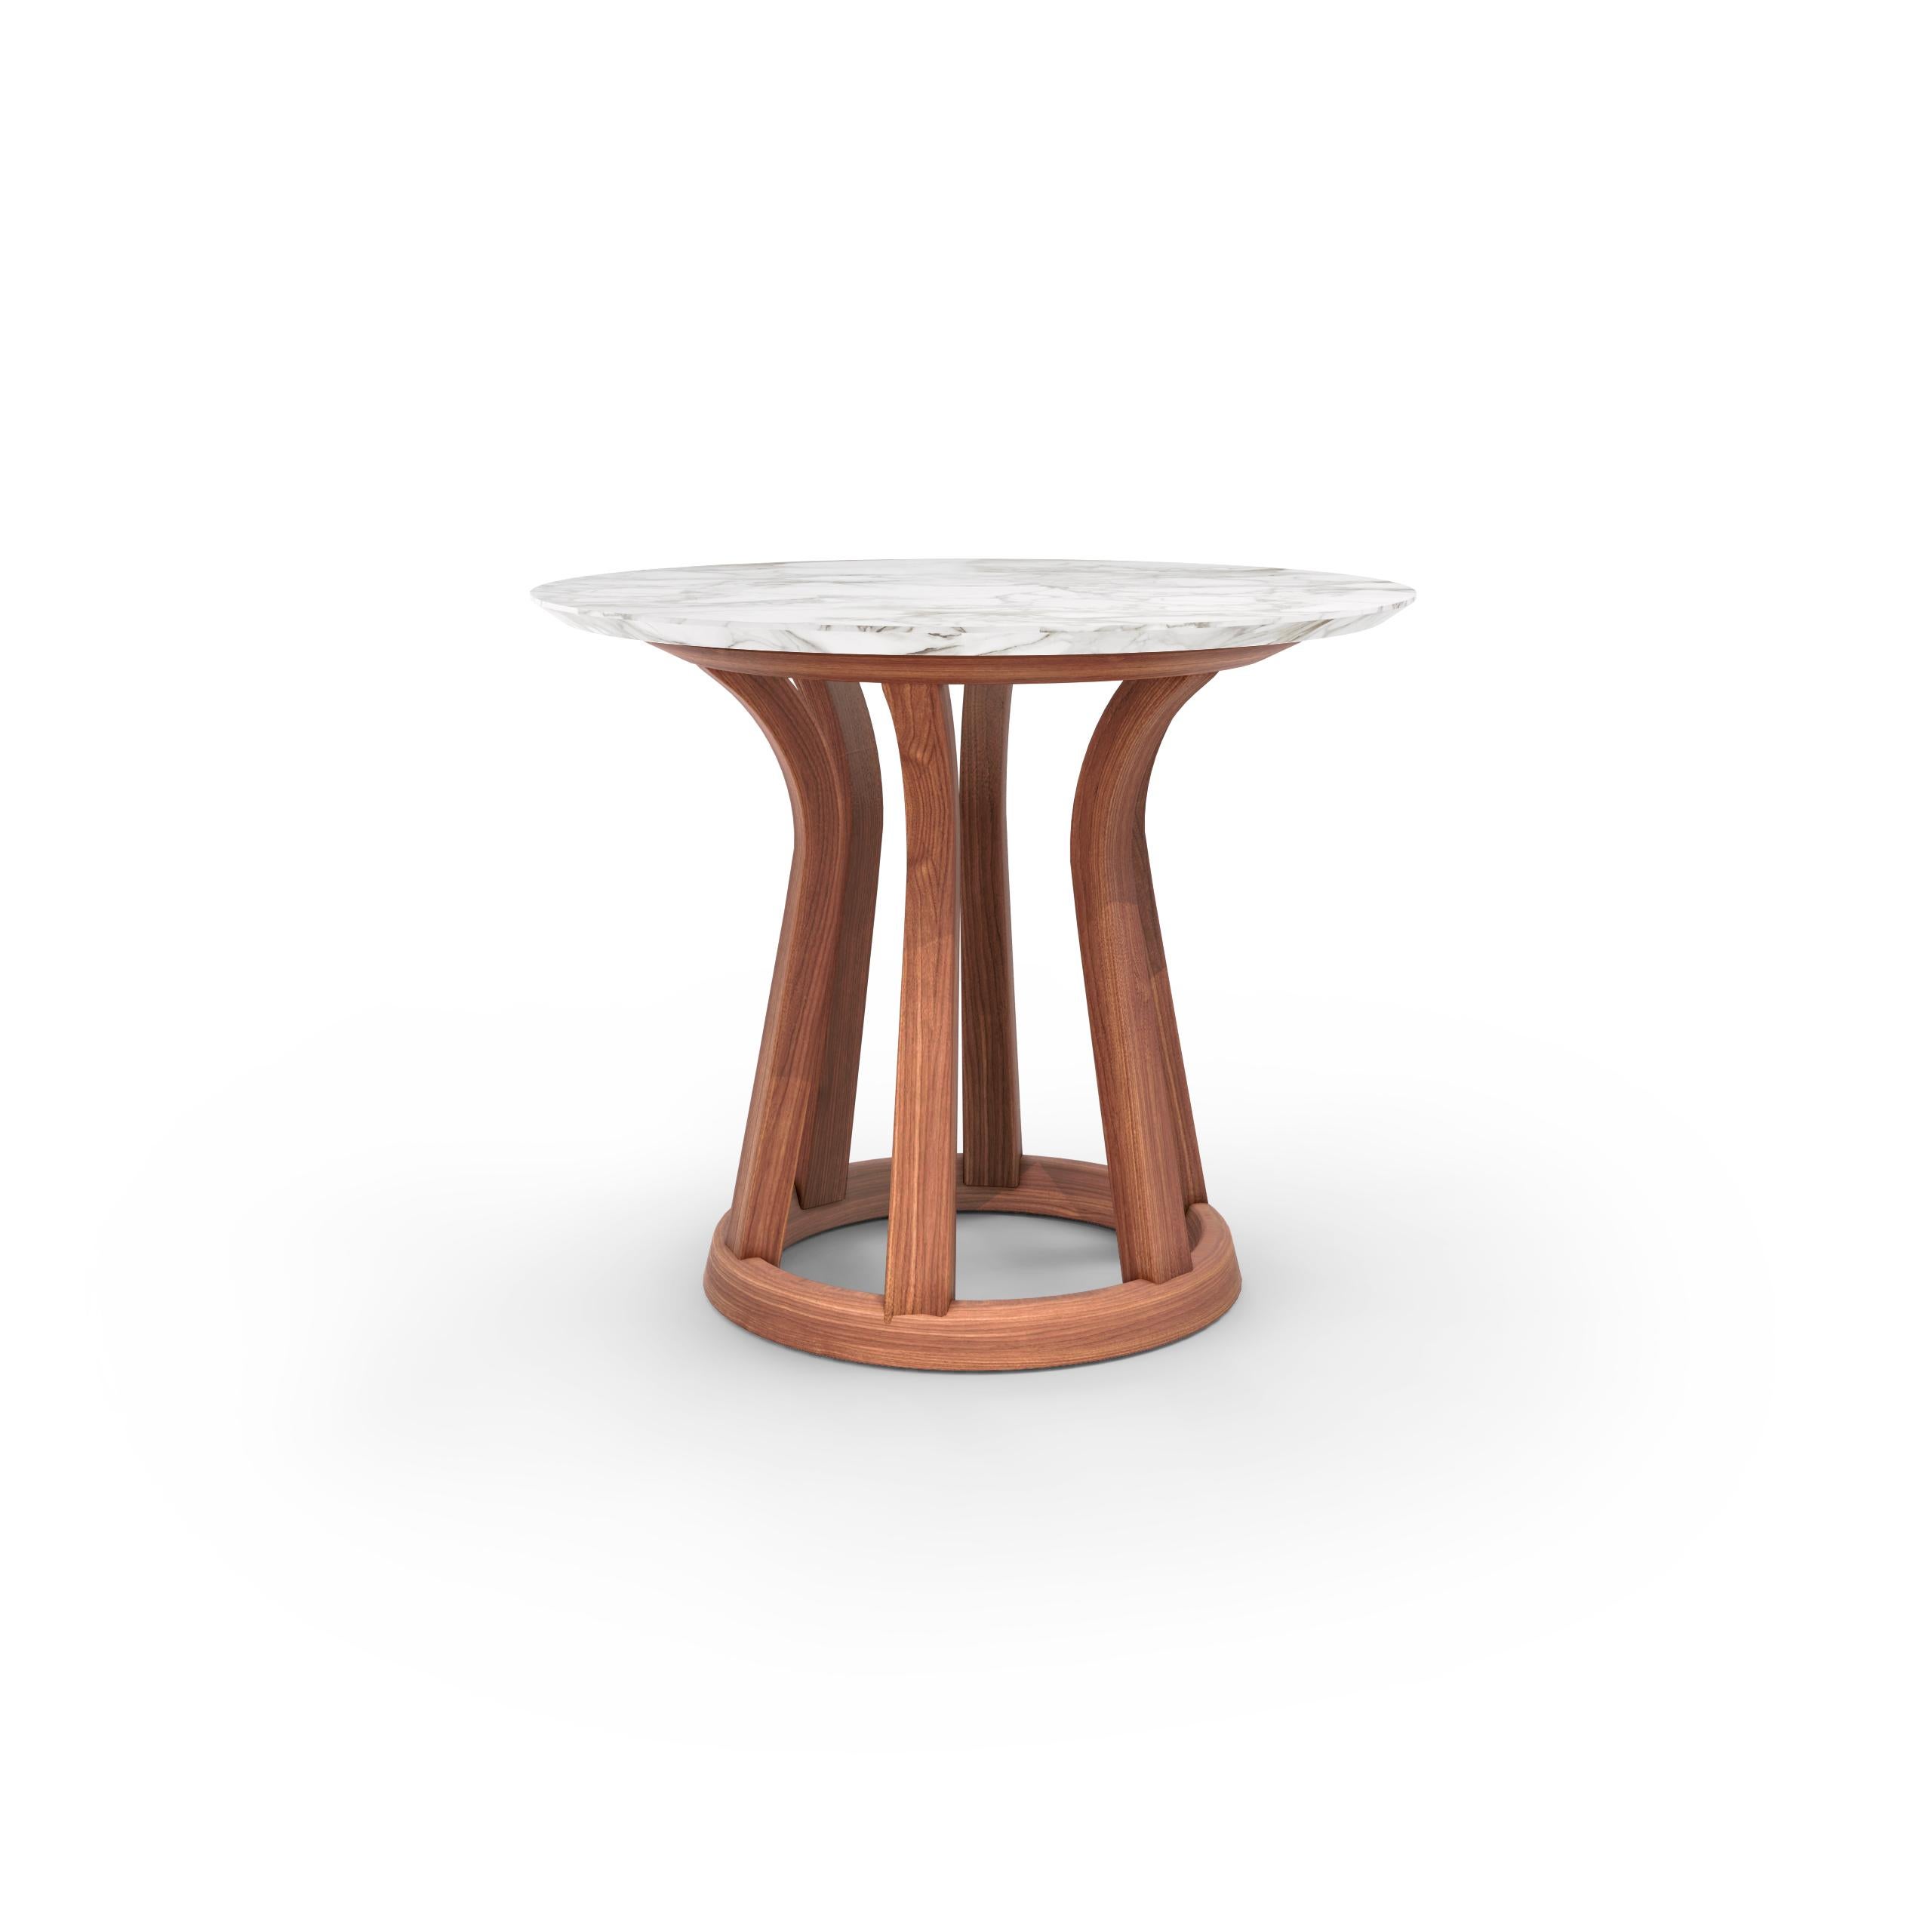 Niedriger Tisch Lebeau aus Holz von Patrick Jouin.
Hergestellt von Cassina in Italien.

2017 schlossen sich Patrick Jouin und Cassina zusammen, um den Tisch Lebeau Wood zu produzieren, eine aktualisierte Version des 14 Jahre zuvor eingeführten